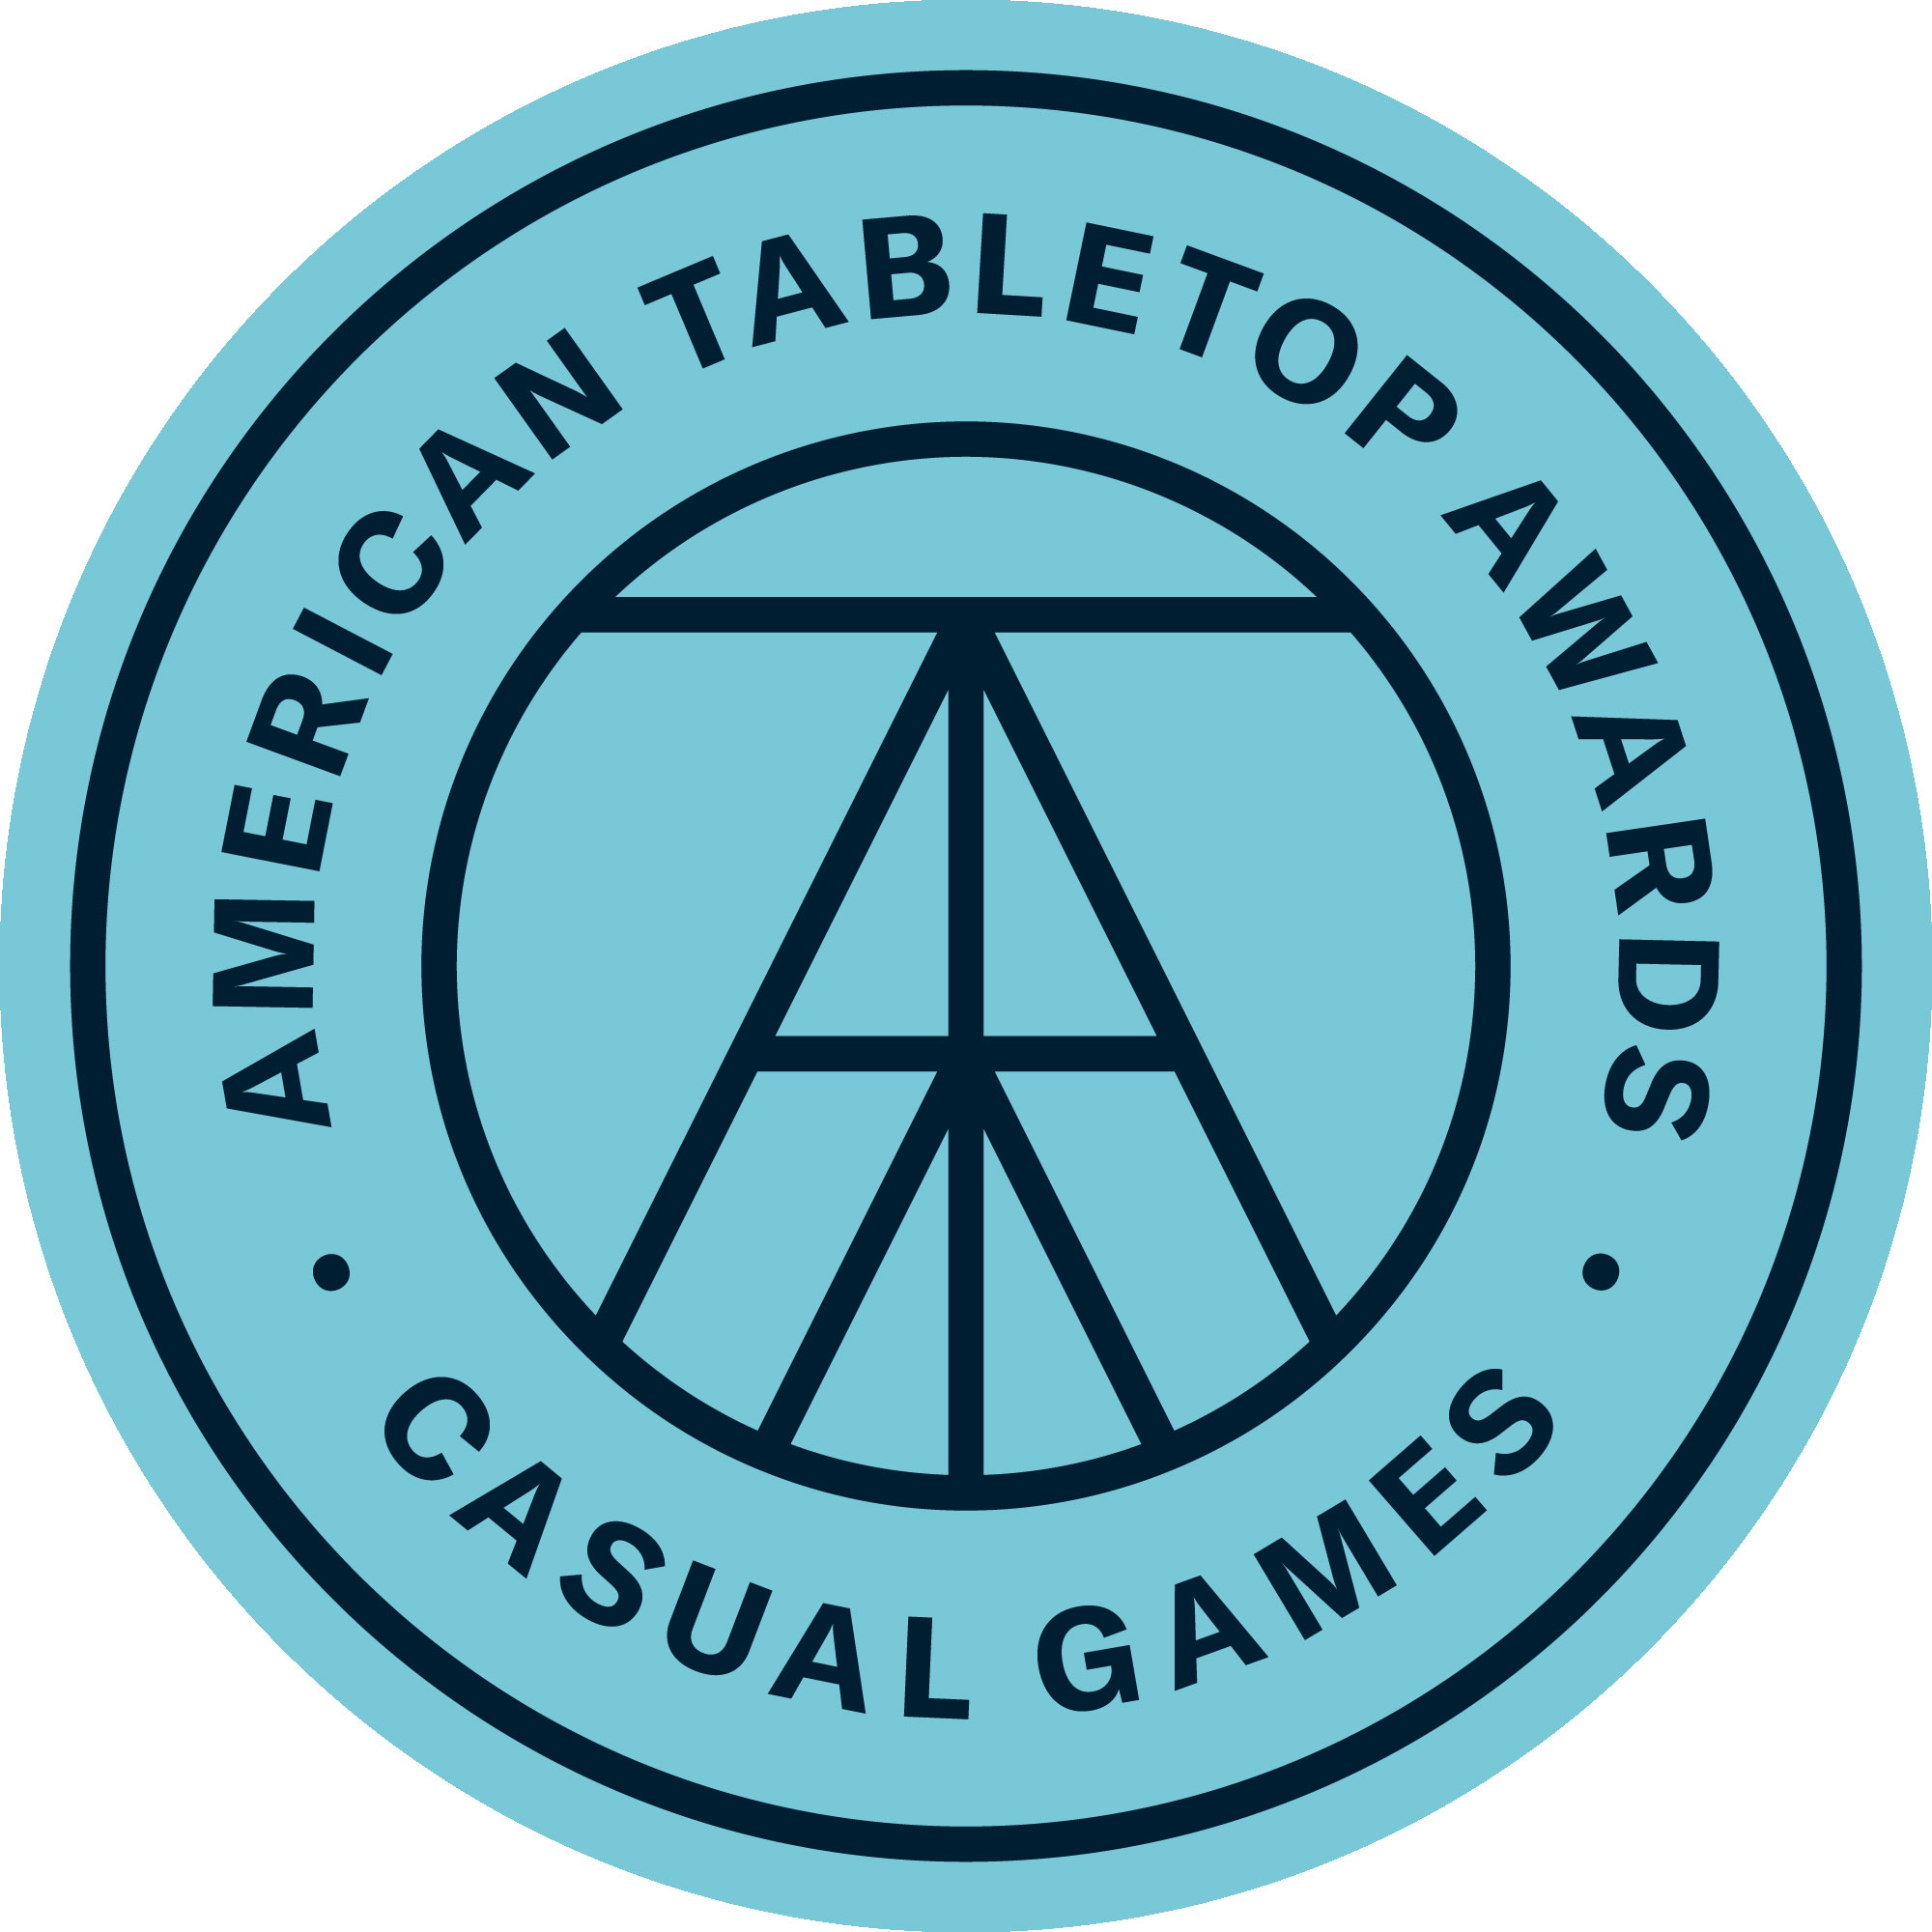 Casual Games er spil, der er bredt tilgængelige, og som appellerer til spillere på alle niveauer. Spil i denne kategori tager typisk imellem 30 og 60 minutter at spille.